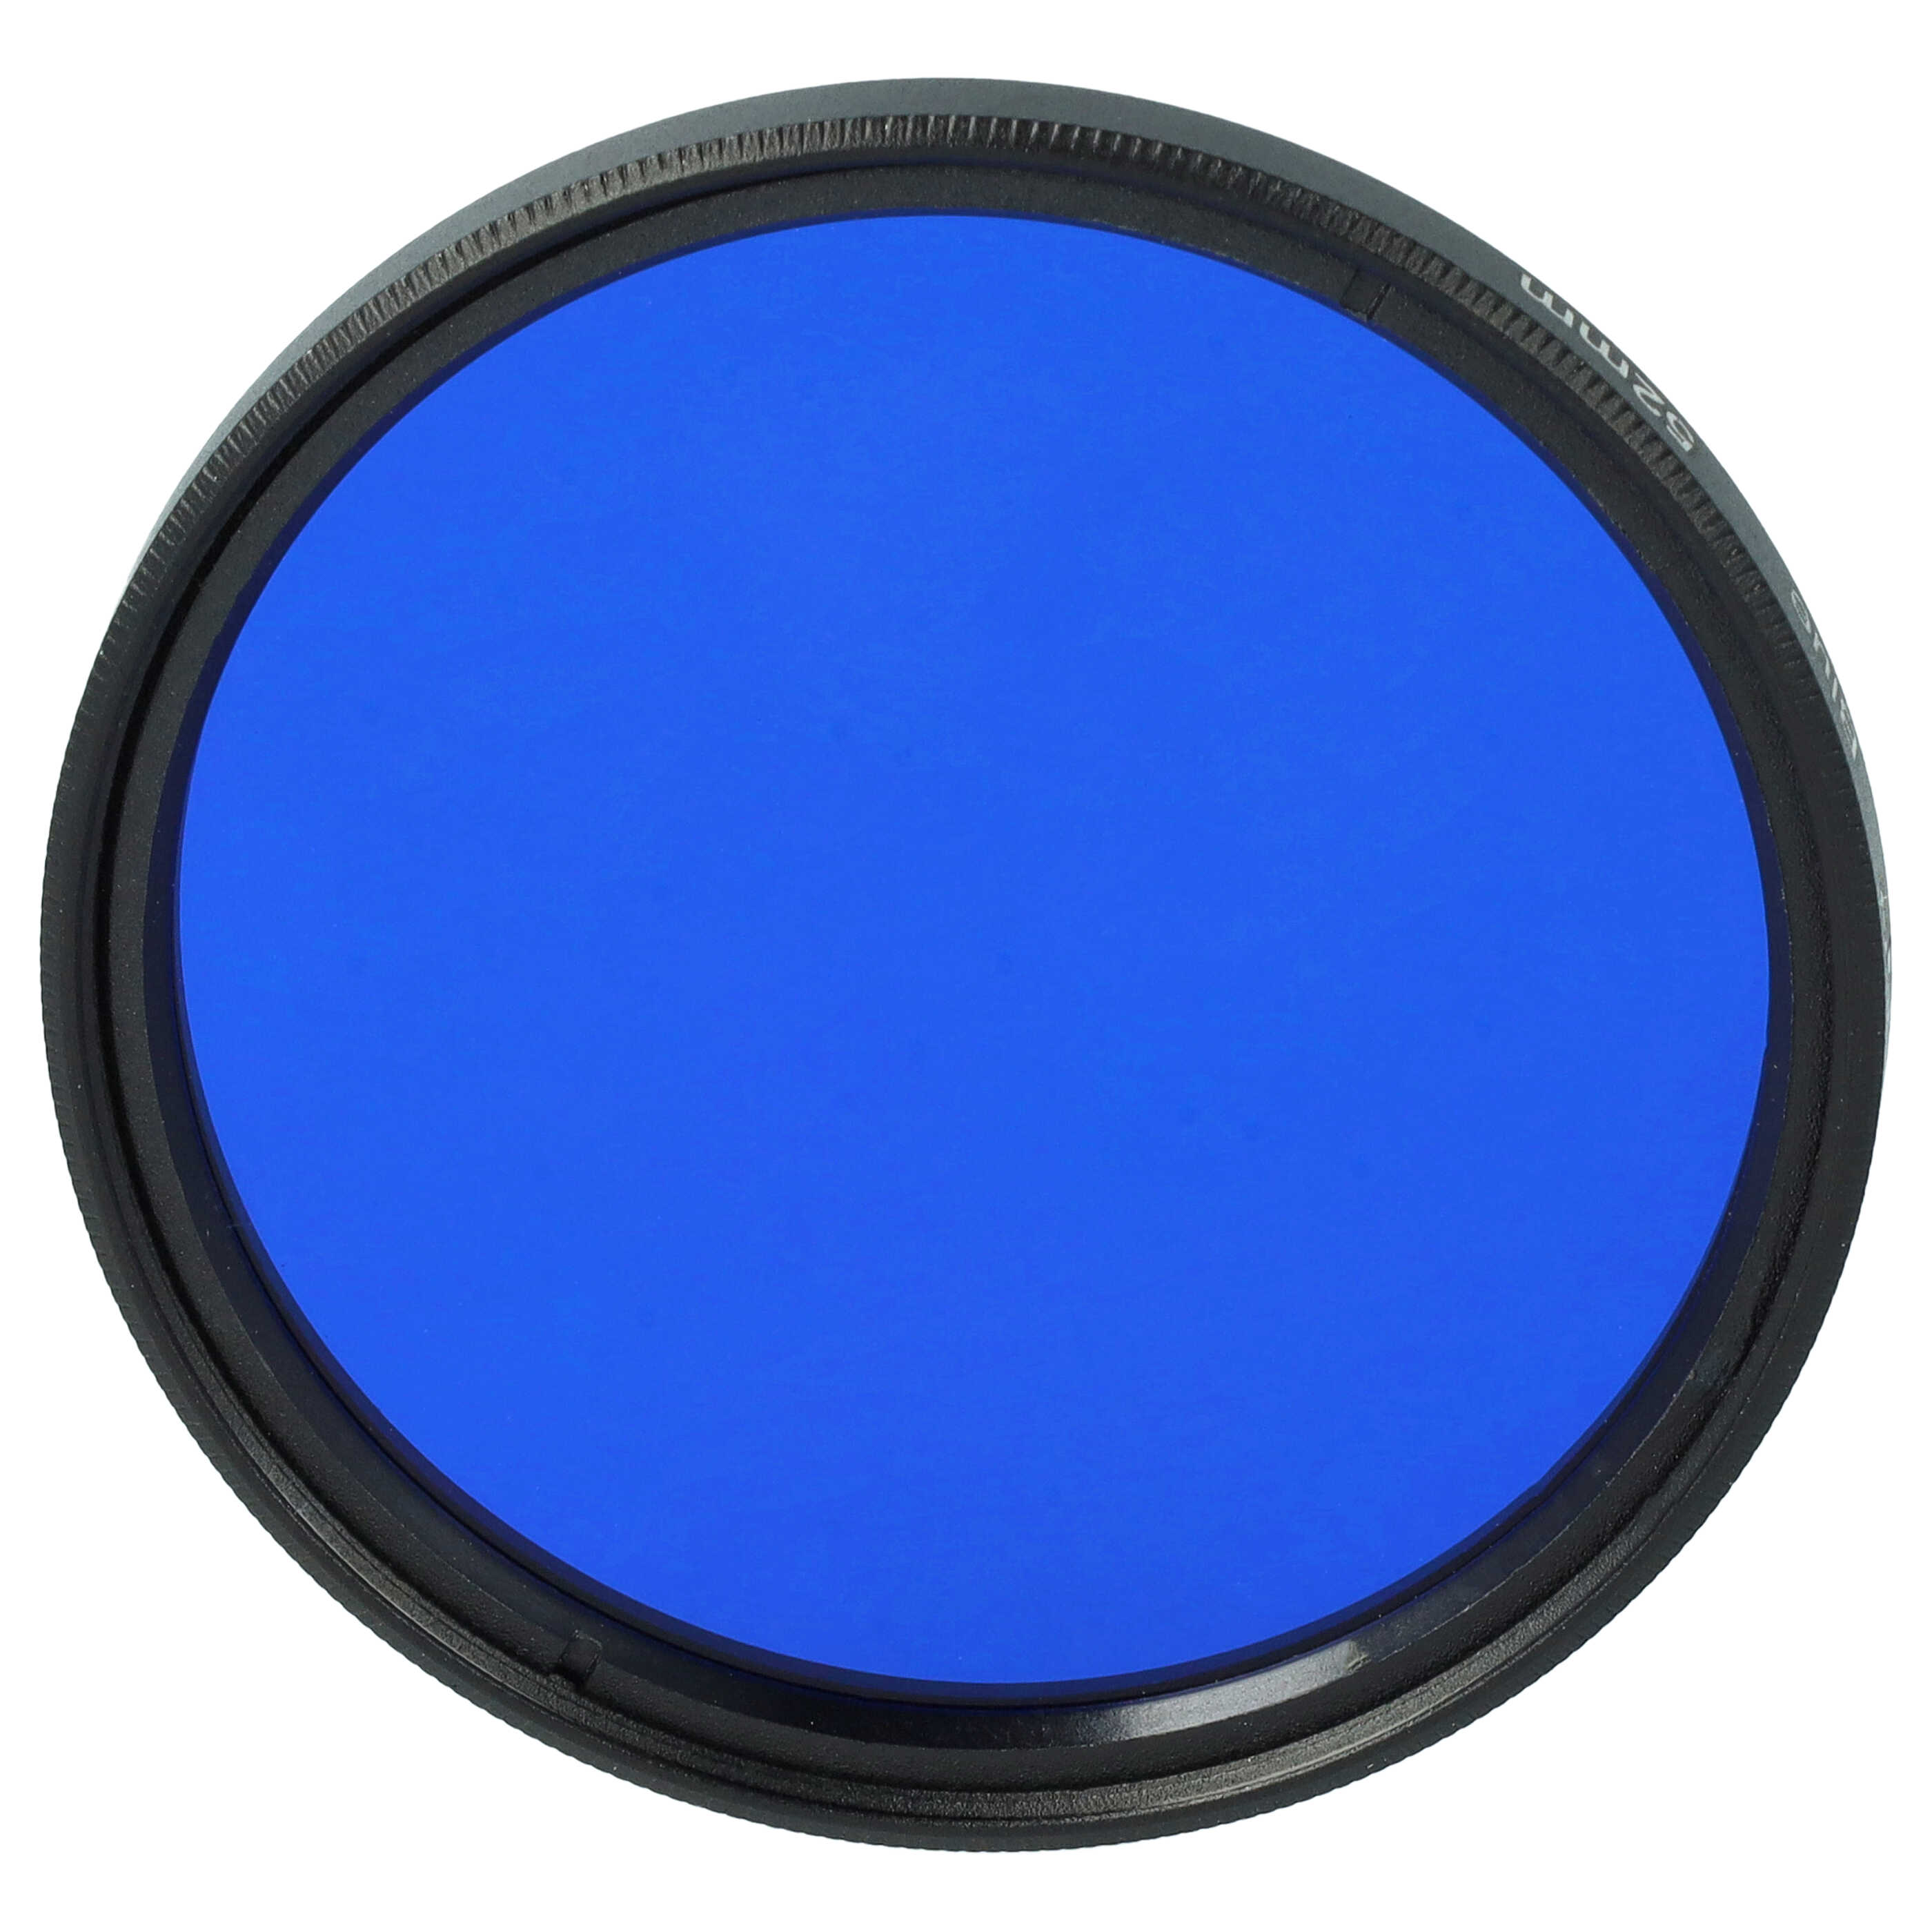 Farbfilter blau passend für Kamera Objektive mit 52 mm Filtergewinde - Blaufilter